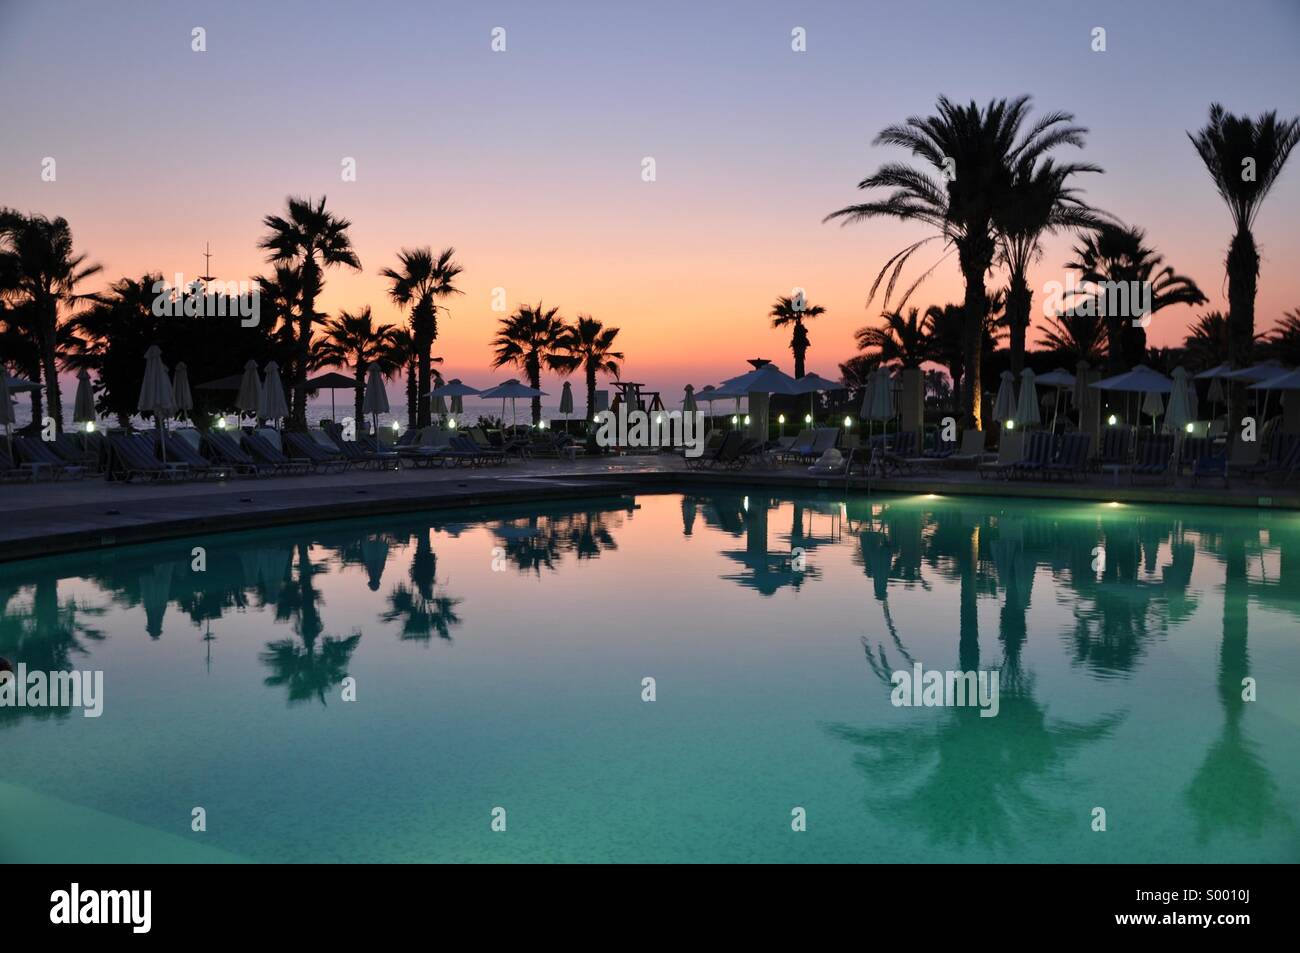 Zypern-Sonnenaufgang Stockfoto